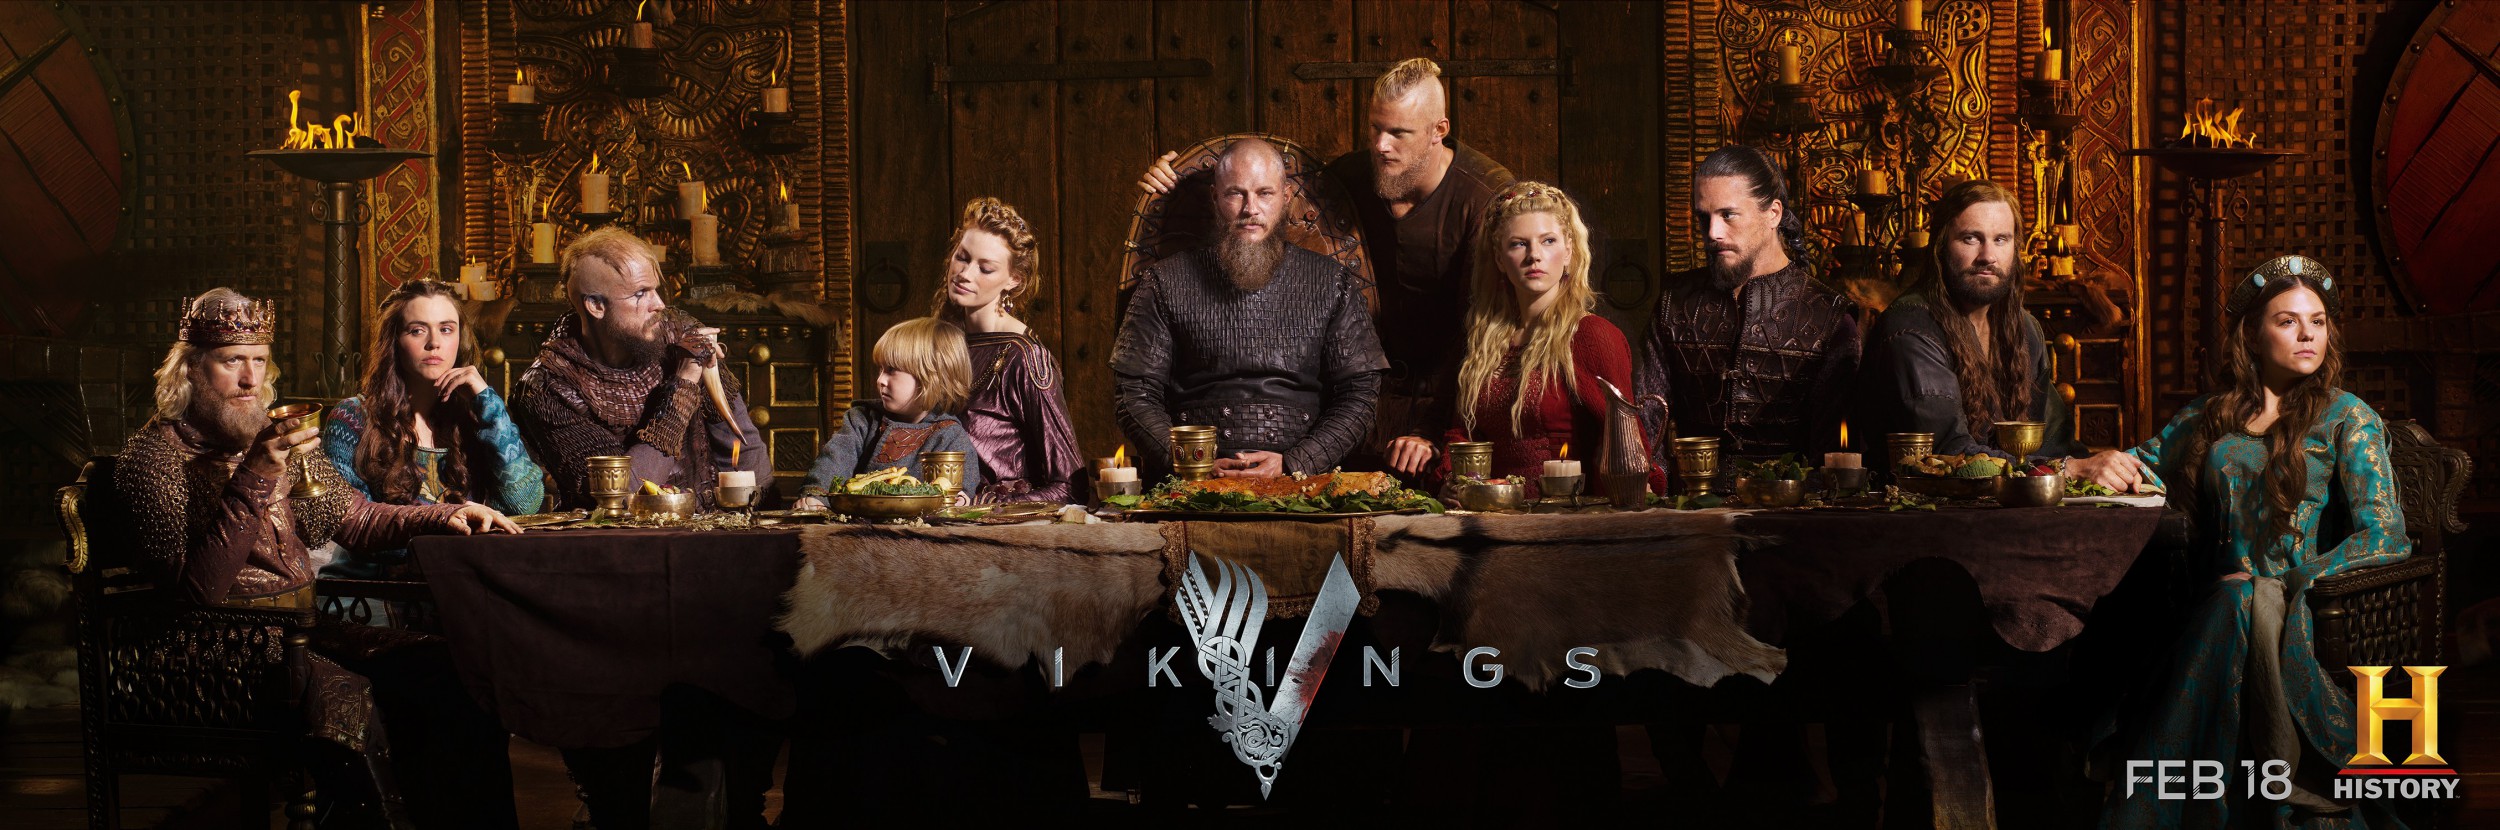 Mega Sized TV Poster Image for Vikings (#21 of 30)